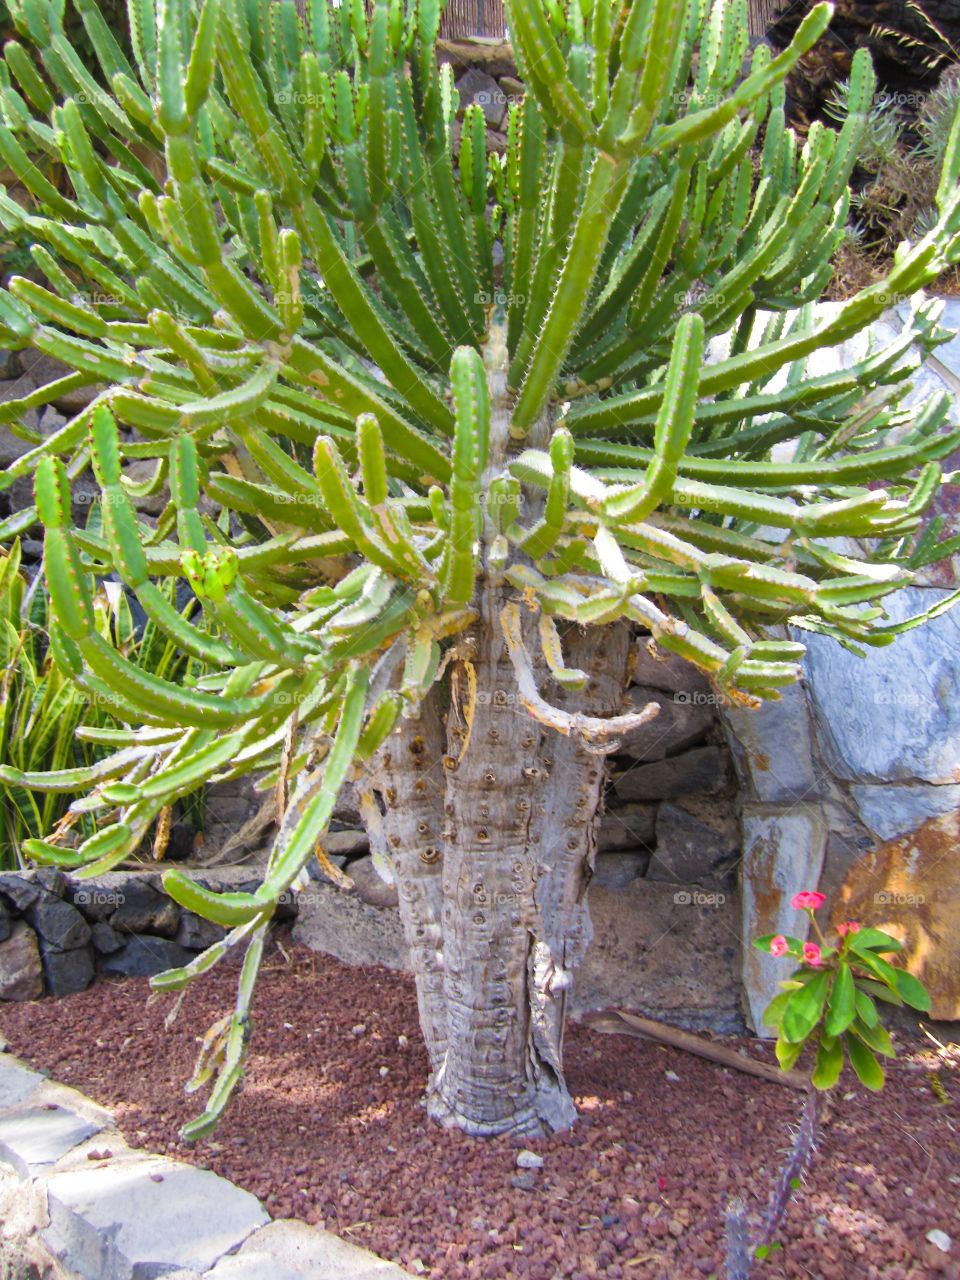 Giant Cactus tree